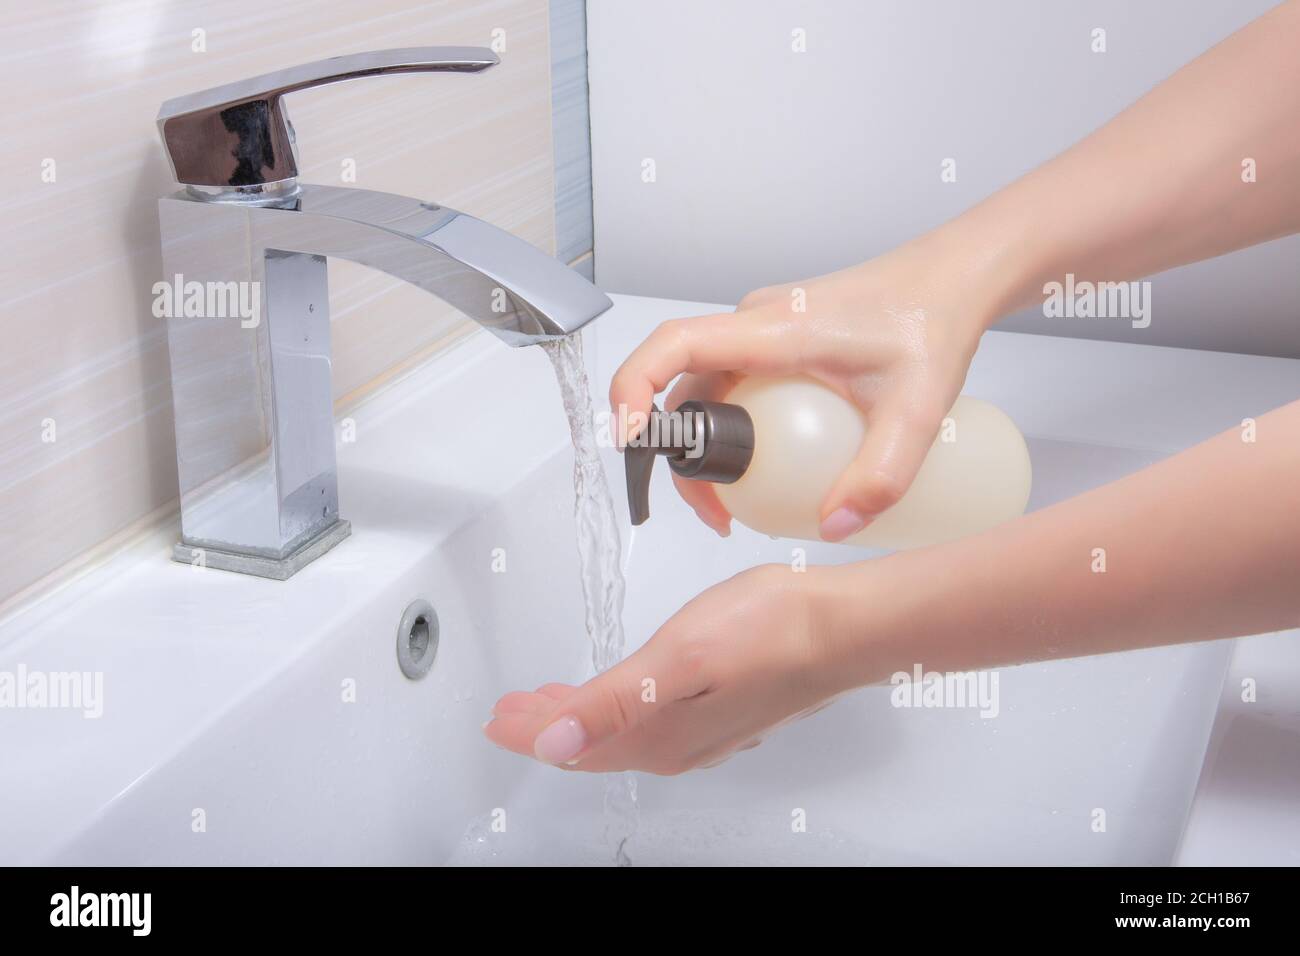 Waschen Sie Ihre Hände mit Seife zur Reinigung hilft, Keime und Covid zu verhindern. Frau, die sich die Hände mit Schaumseife wascht. Hygiene, Vorbeugung gegen Coronavirus und Gesundheit Stockfoto